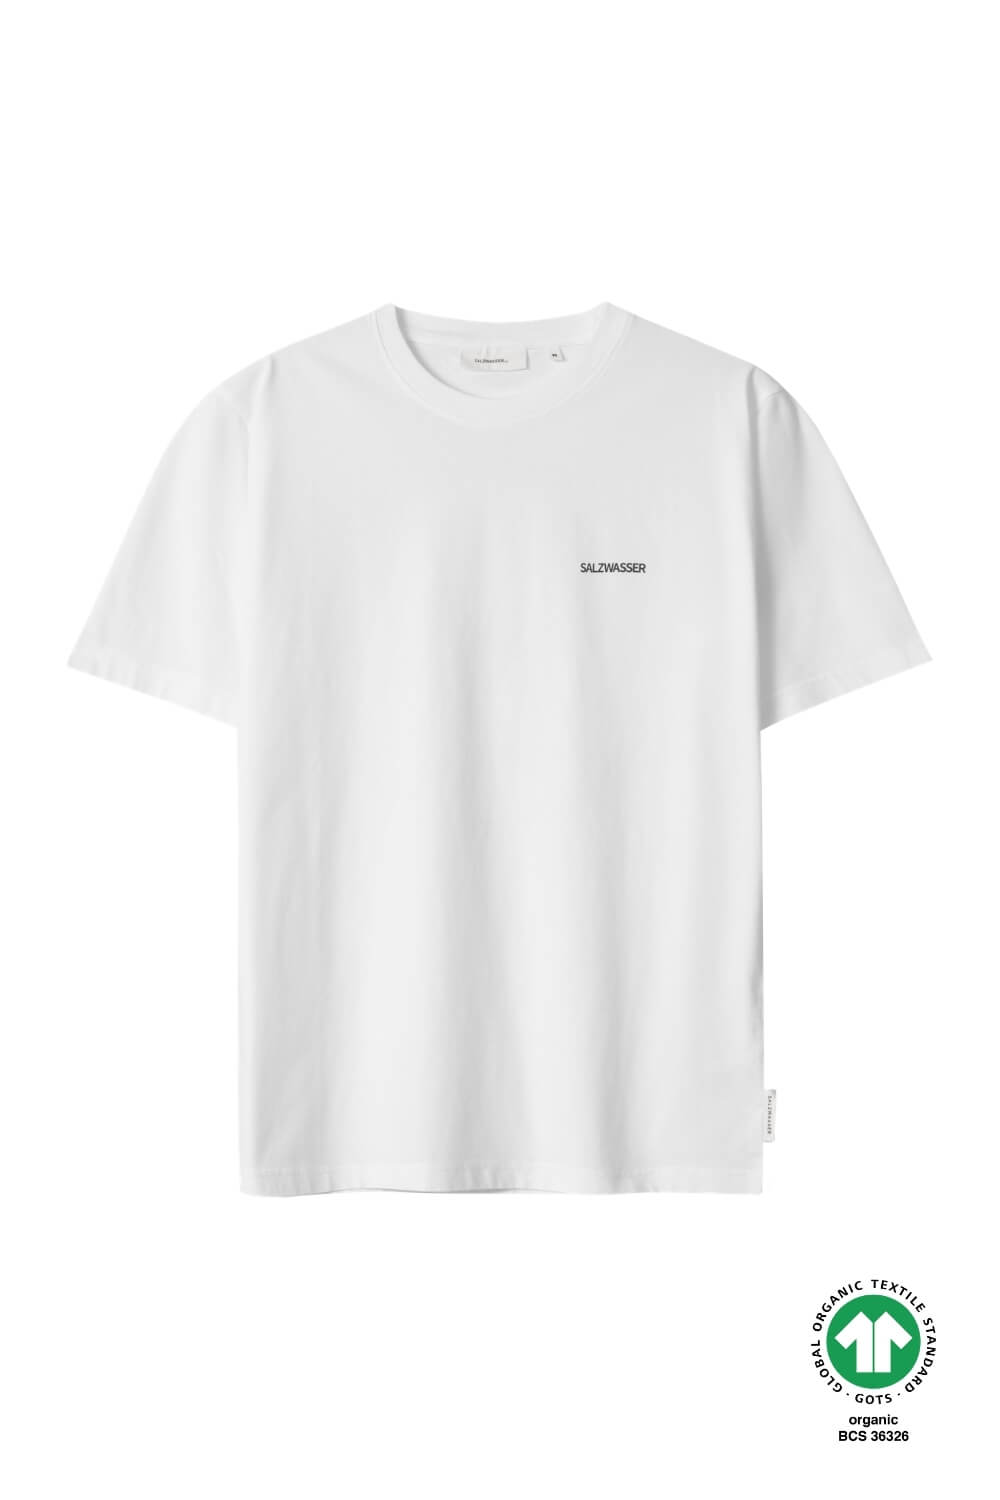 T-Shirt Rückenwind Weiss